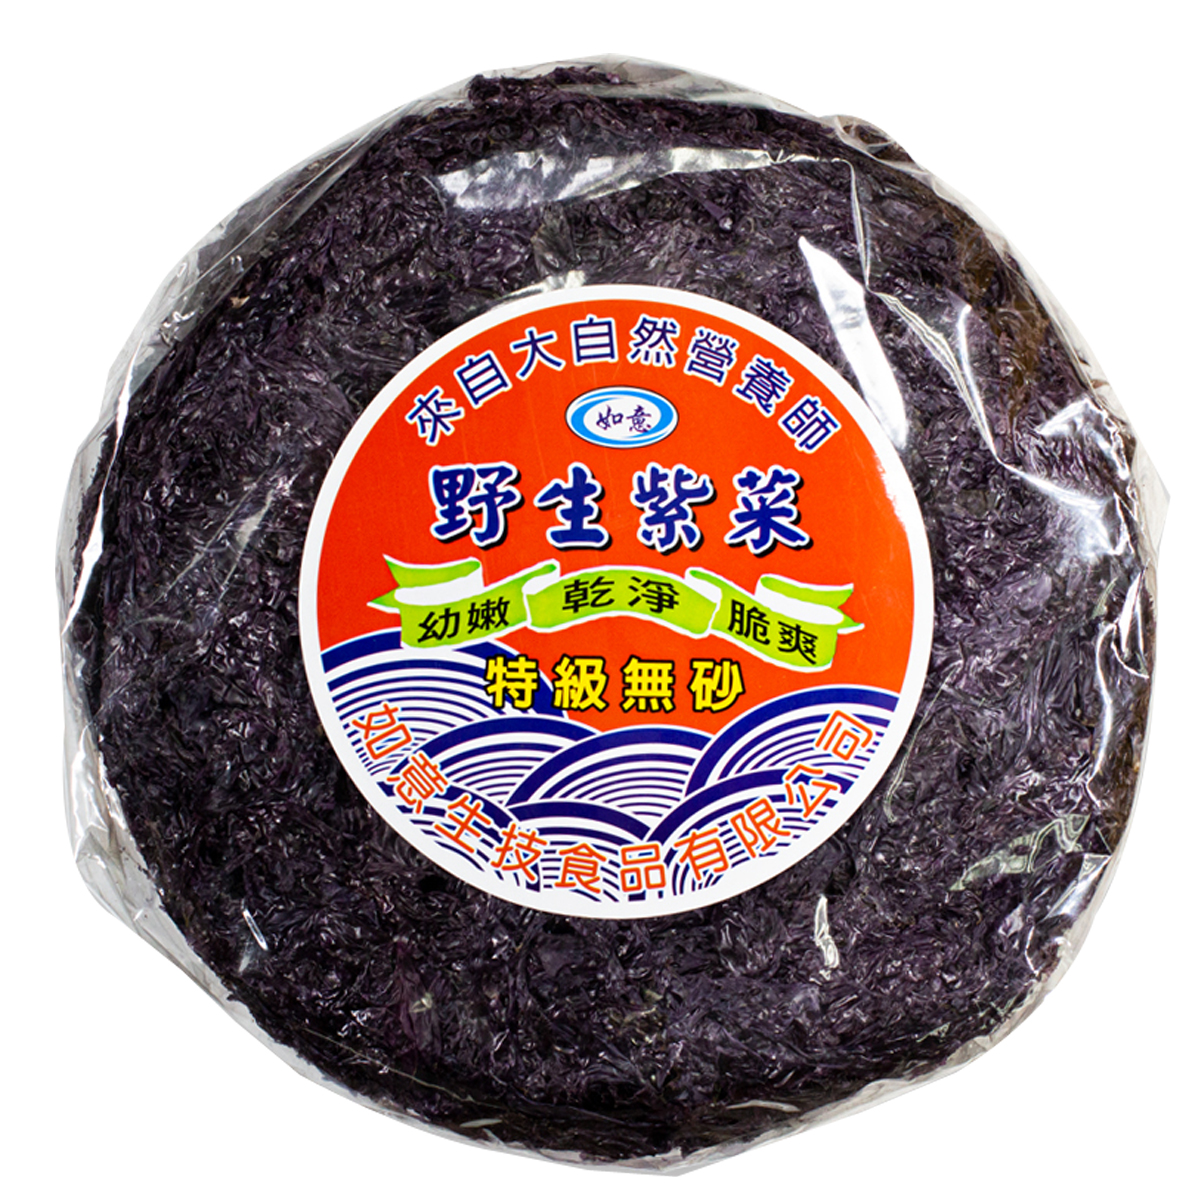 Image Dried Seaweed 如意-无砂紫菜 110grams